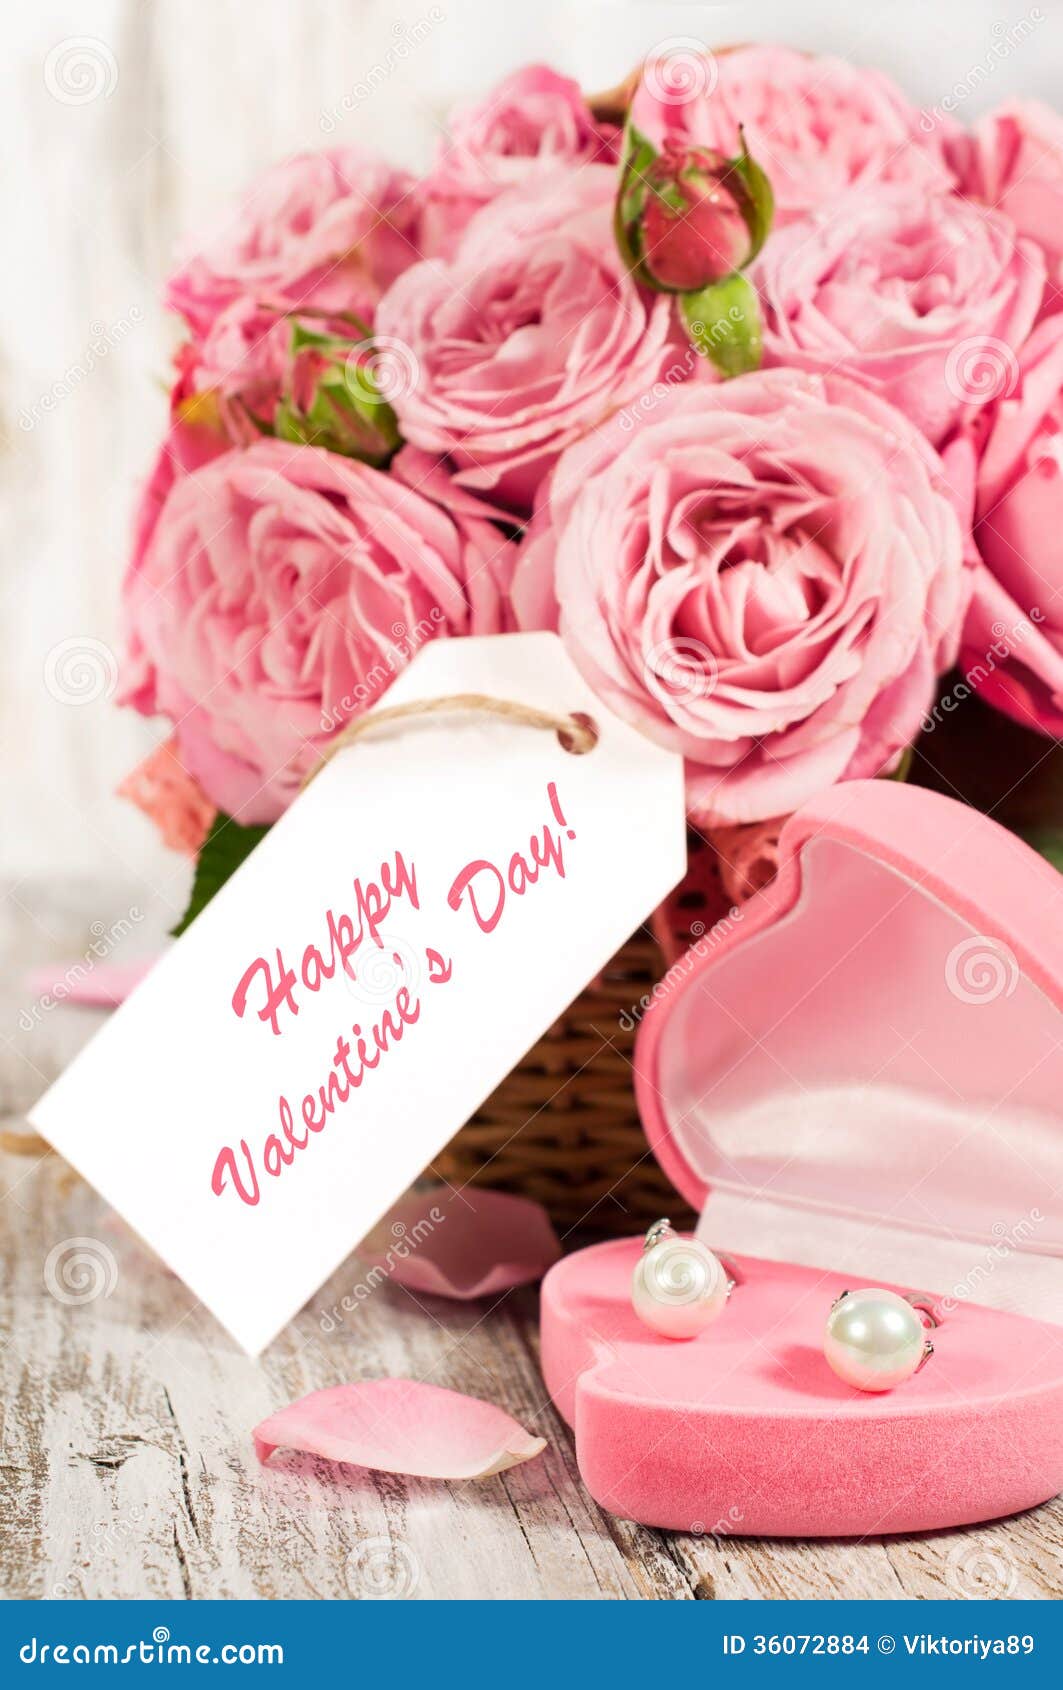 Розовая открытка с днем рождения. С днем рождения цветы. Открытки с днем рождения пионы. С днём рождения цветы и подарки. Поздравления с днем рождения цветы.